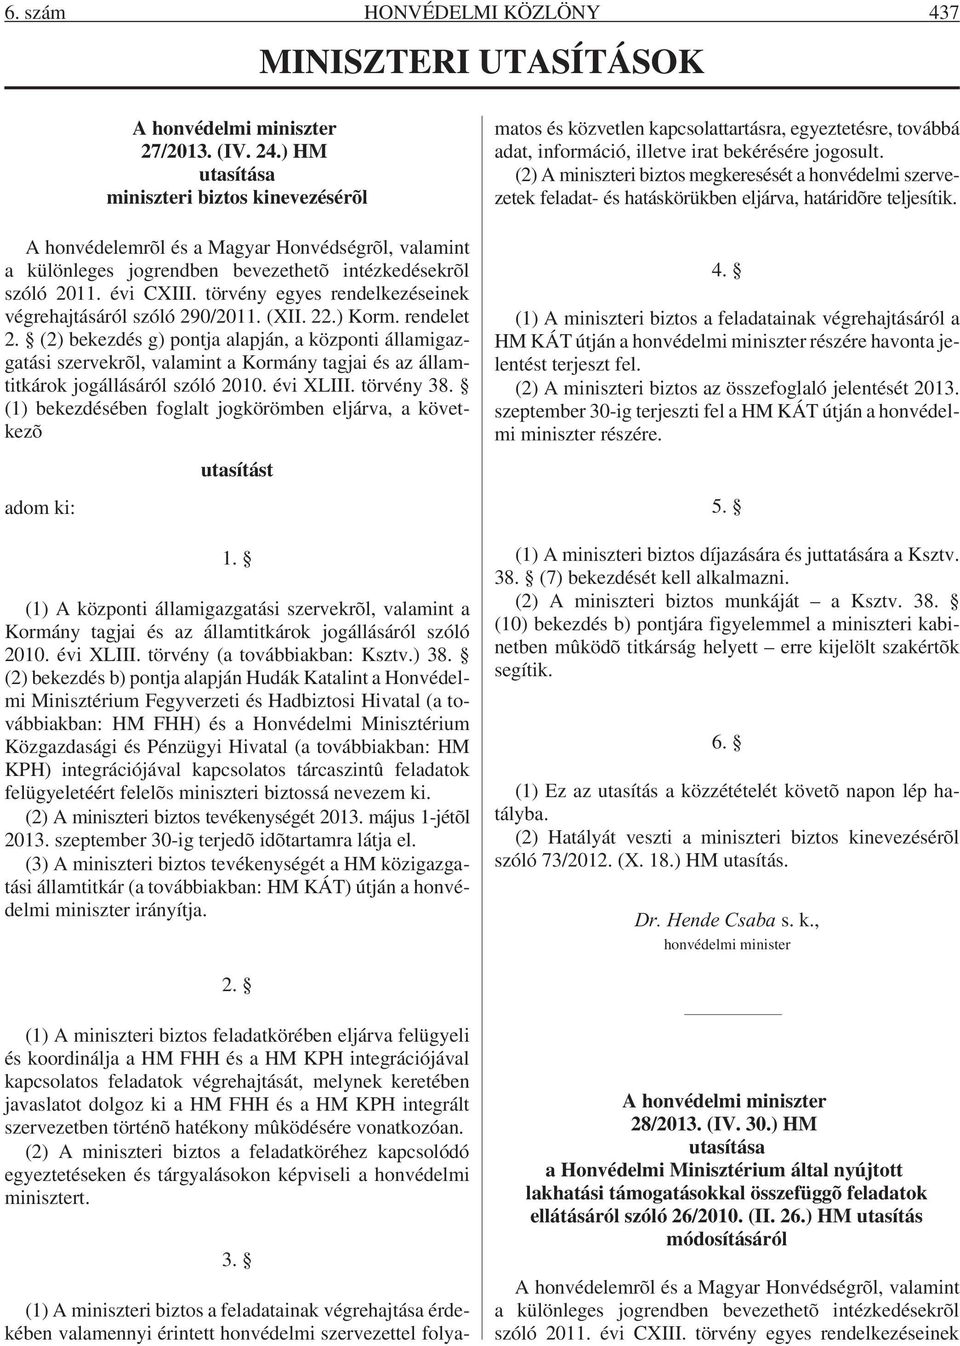 törvény egyes rendelkezéseinek végrehajtásáról szóló 290/2011. (XII. 22.) Korm. rendelet 2.